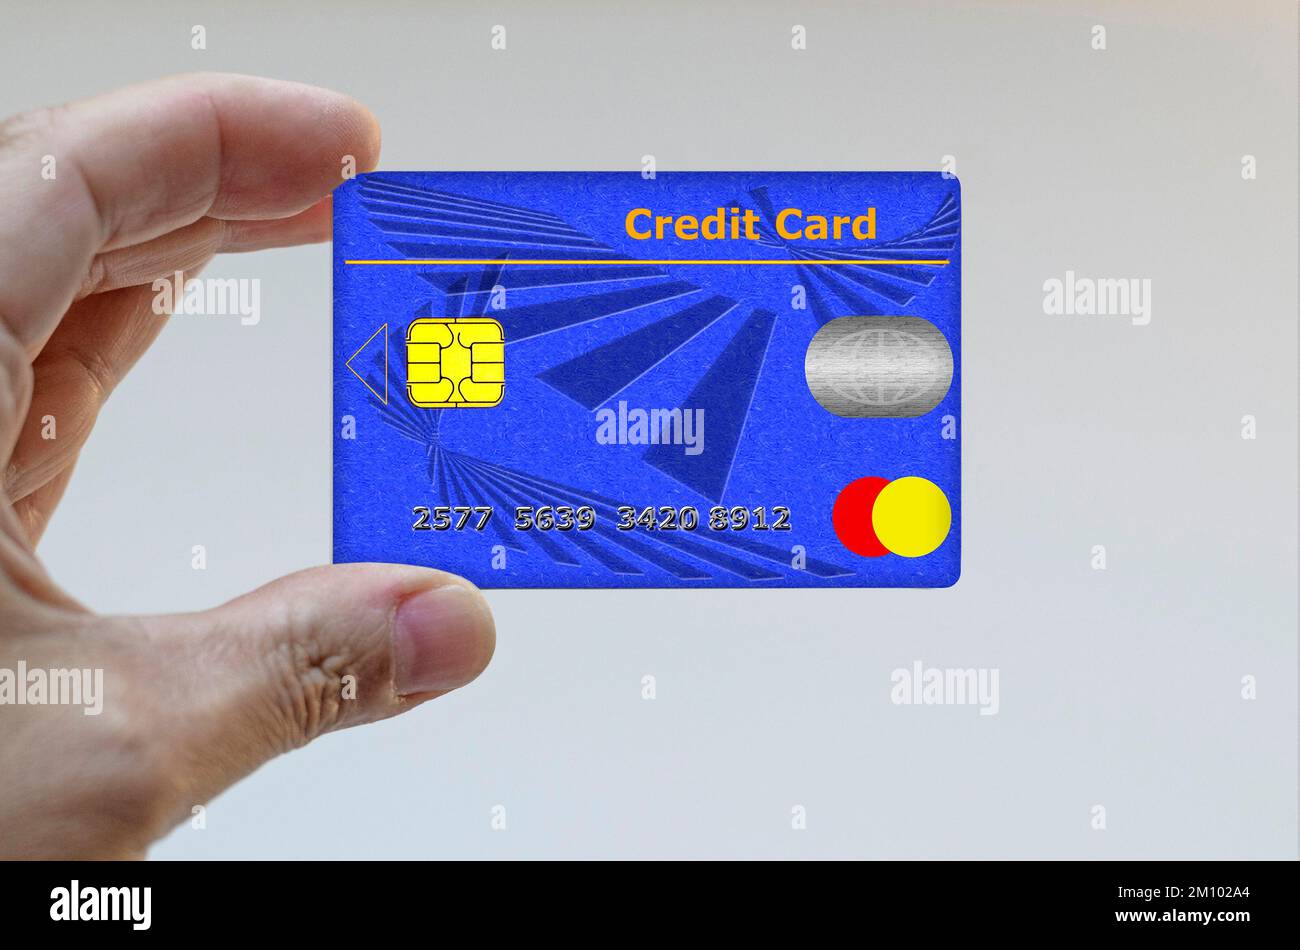 Mano sujetando una tarjeta de crédito Foto de stock